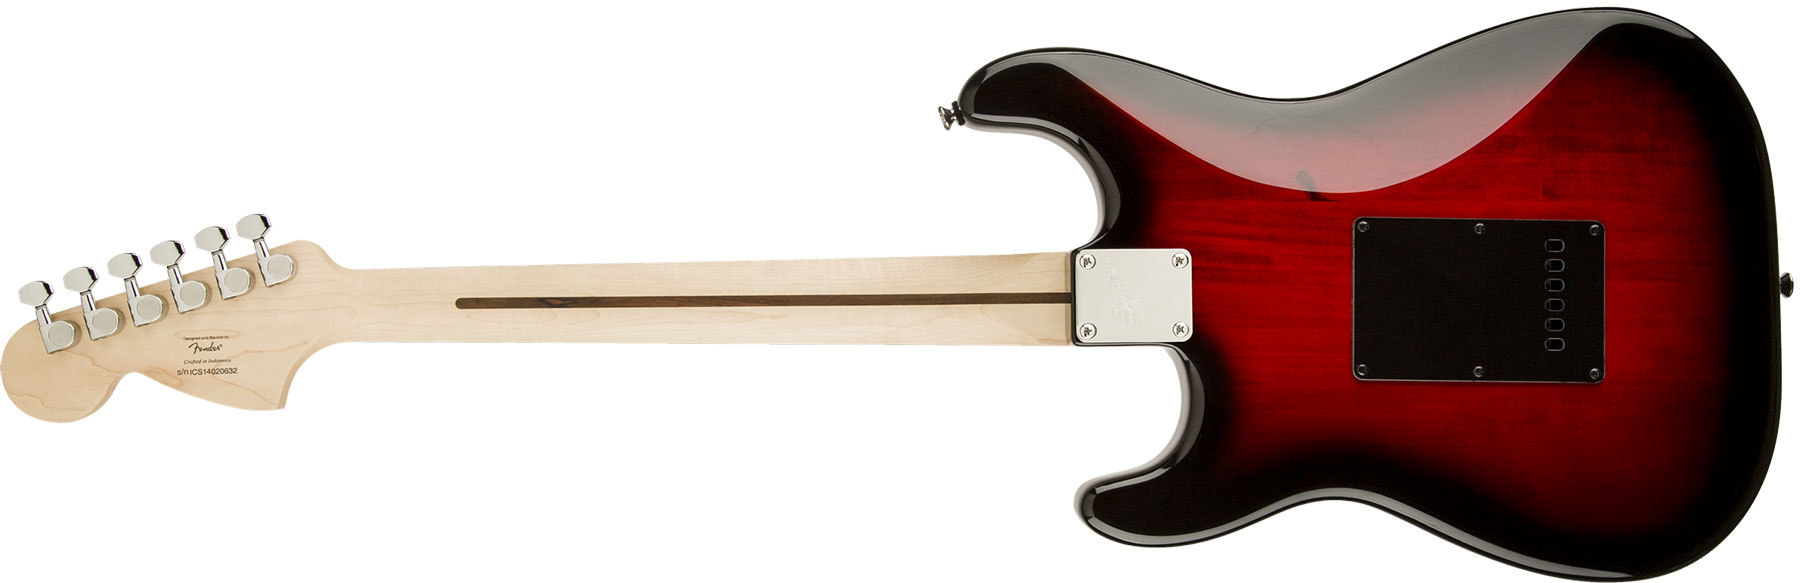 Squier Strat Standard Rw - Antique Burst - E-Gitarre in Str-Form - Variation 1